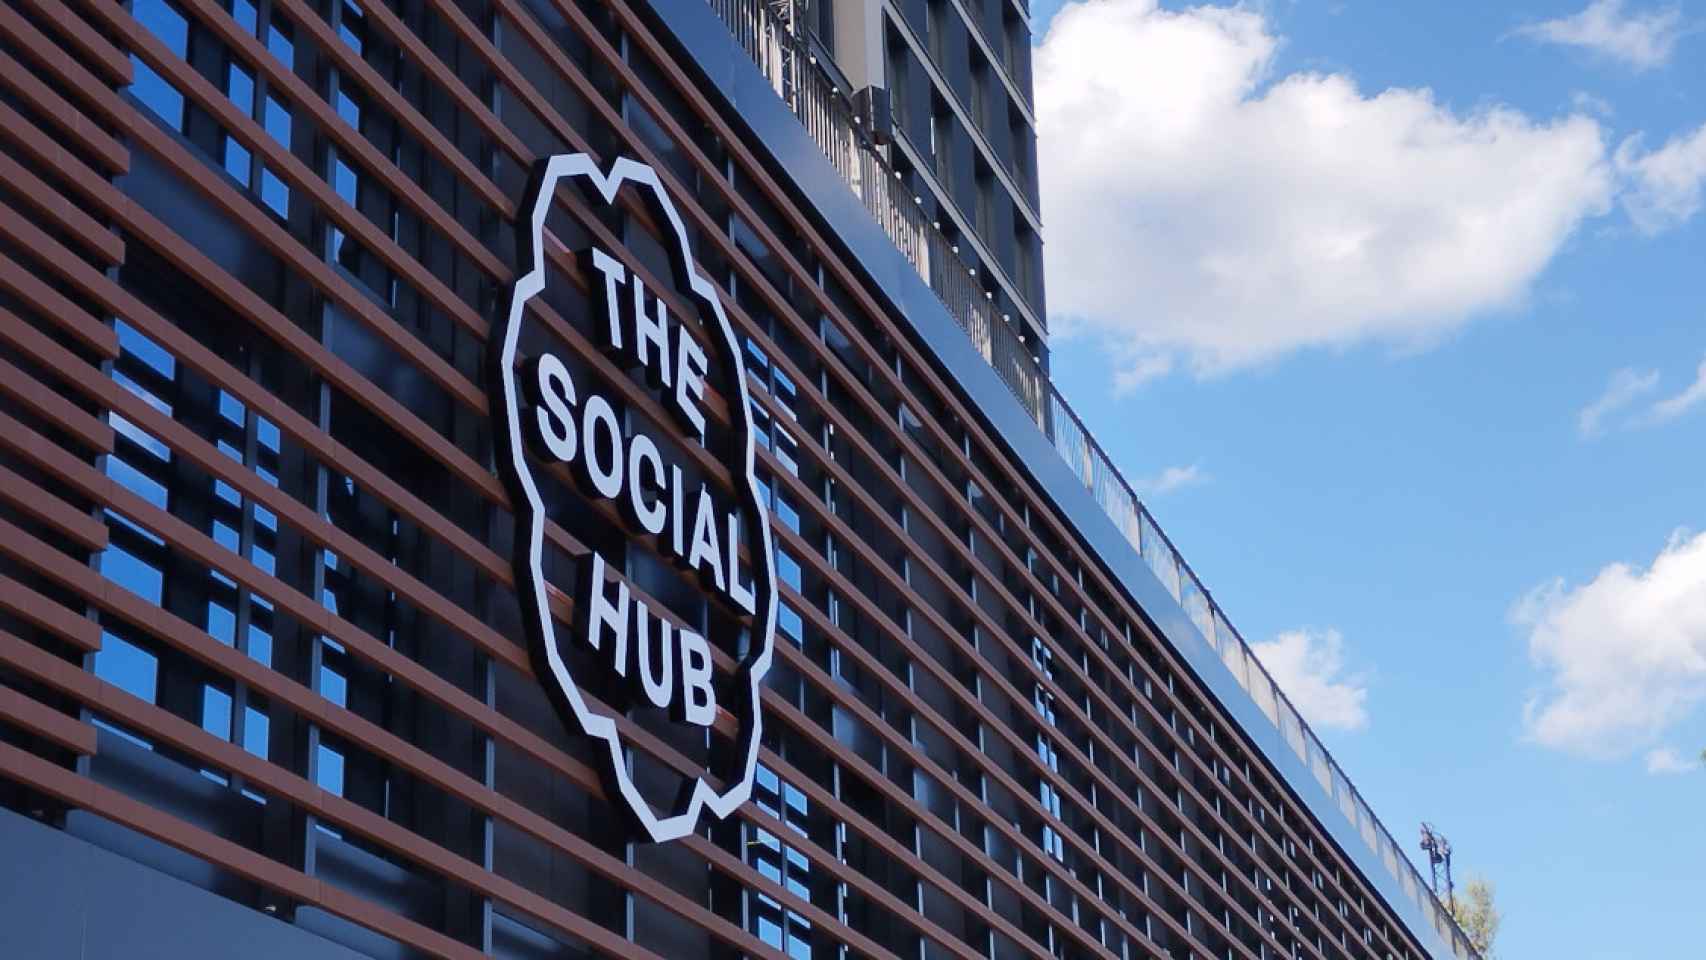 El hotel de The Social Hub en Barcelona / VR - CG